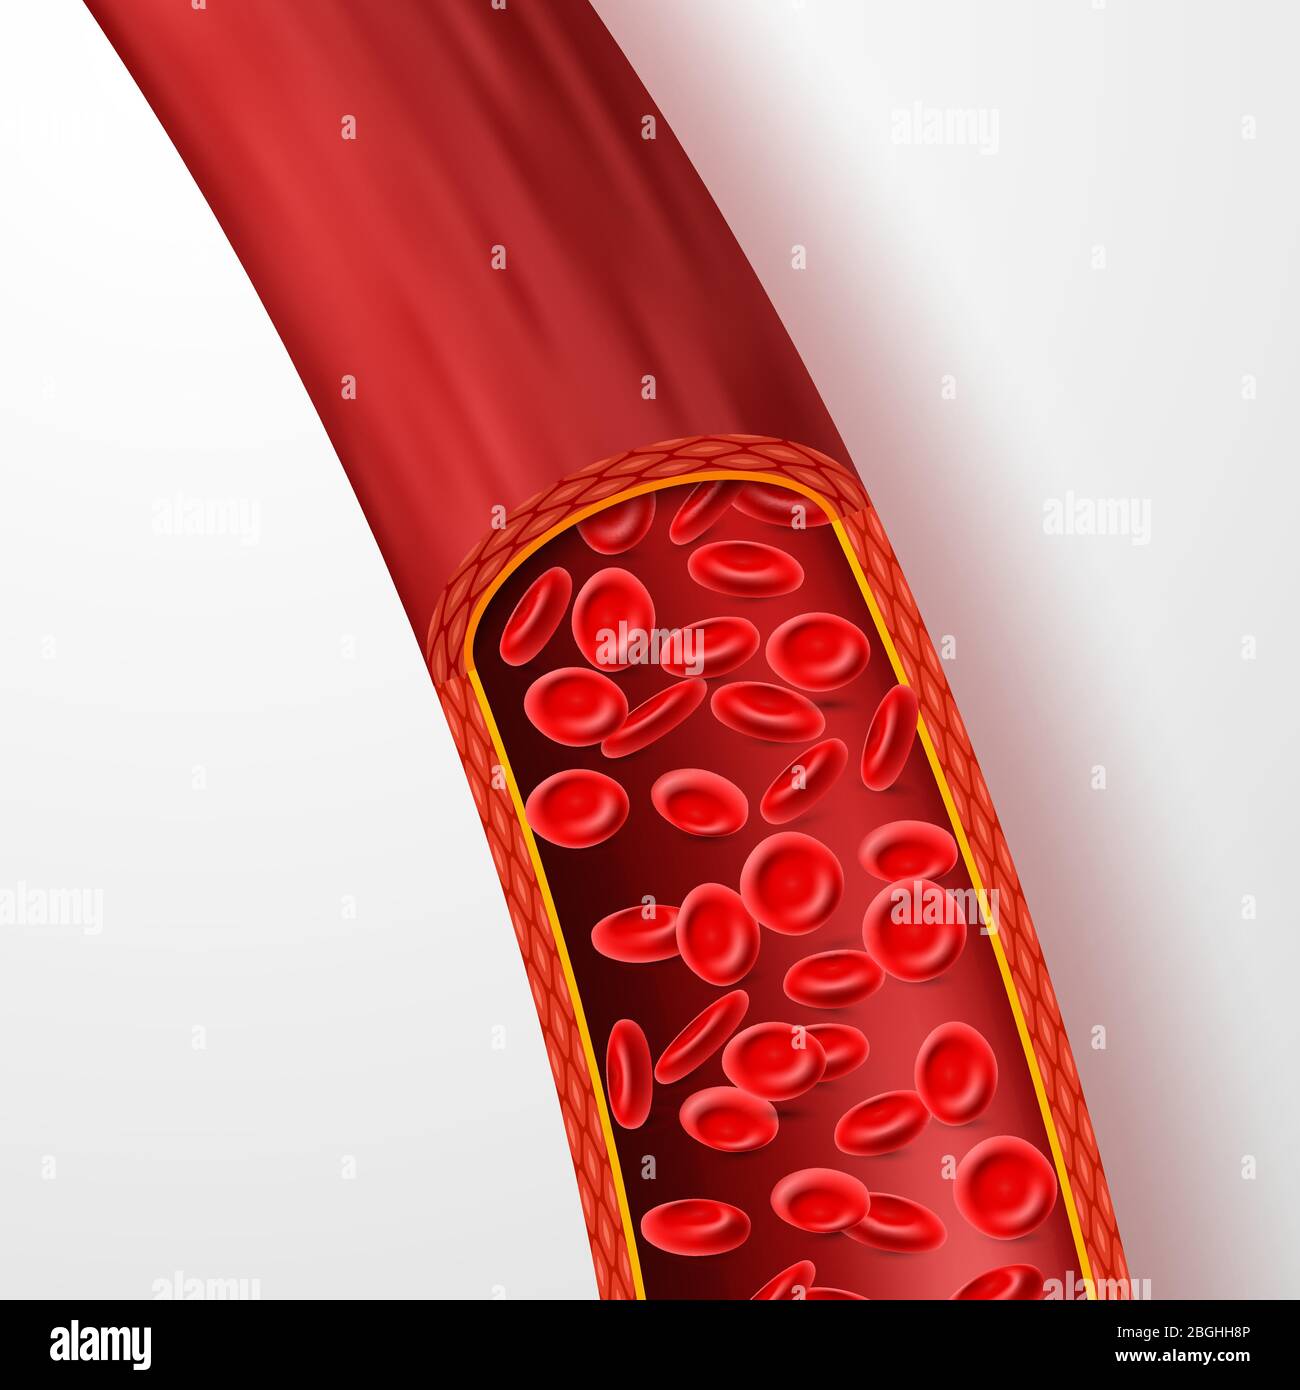 Menschliches Blutgefäß mit roten Blutkörperchen. Blutvene mit Makroerythrozyten in Plasma isoliert Vektor Illustration. Gefäßsystem, Blutfluss menschlichen, kardiovaskulären mikroskopischen Stock Vektor